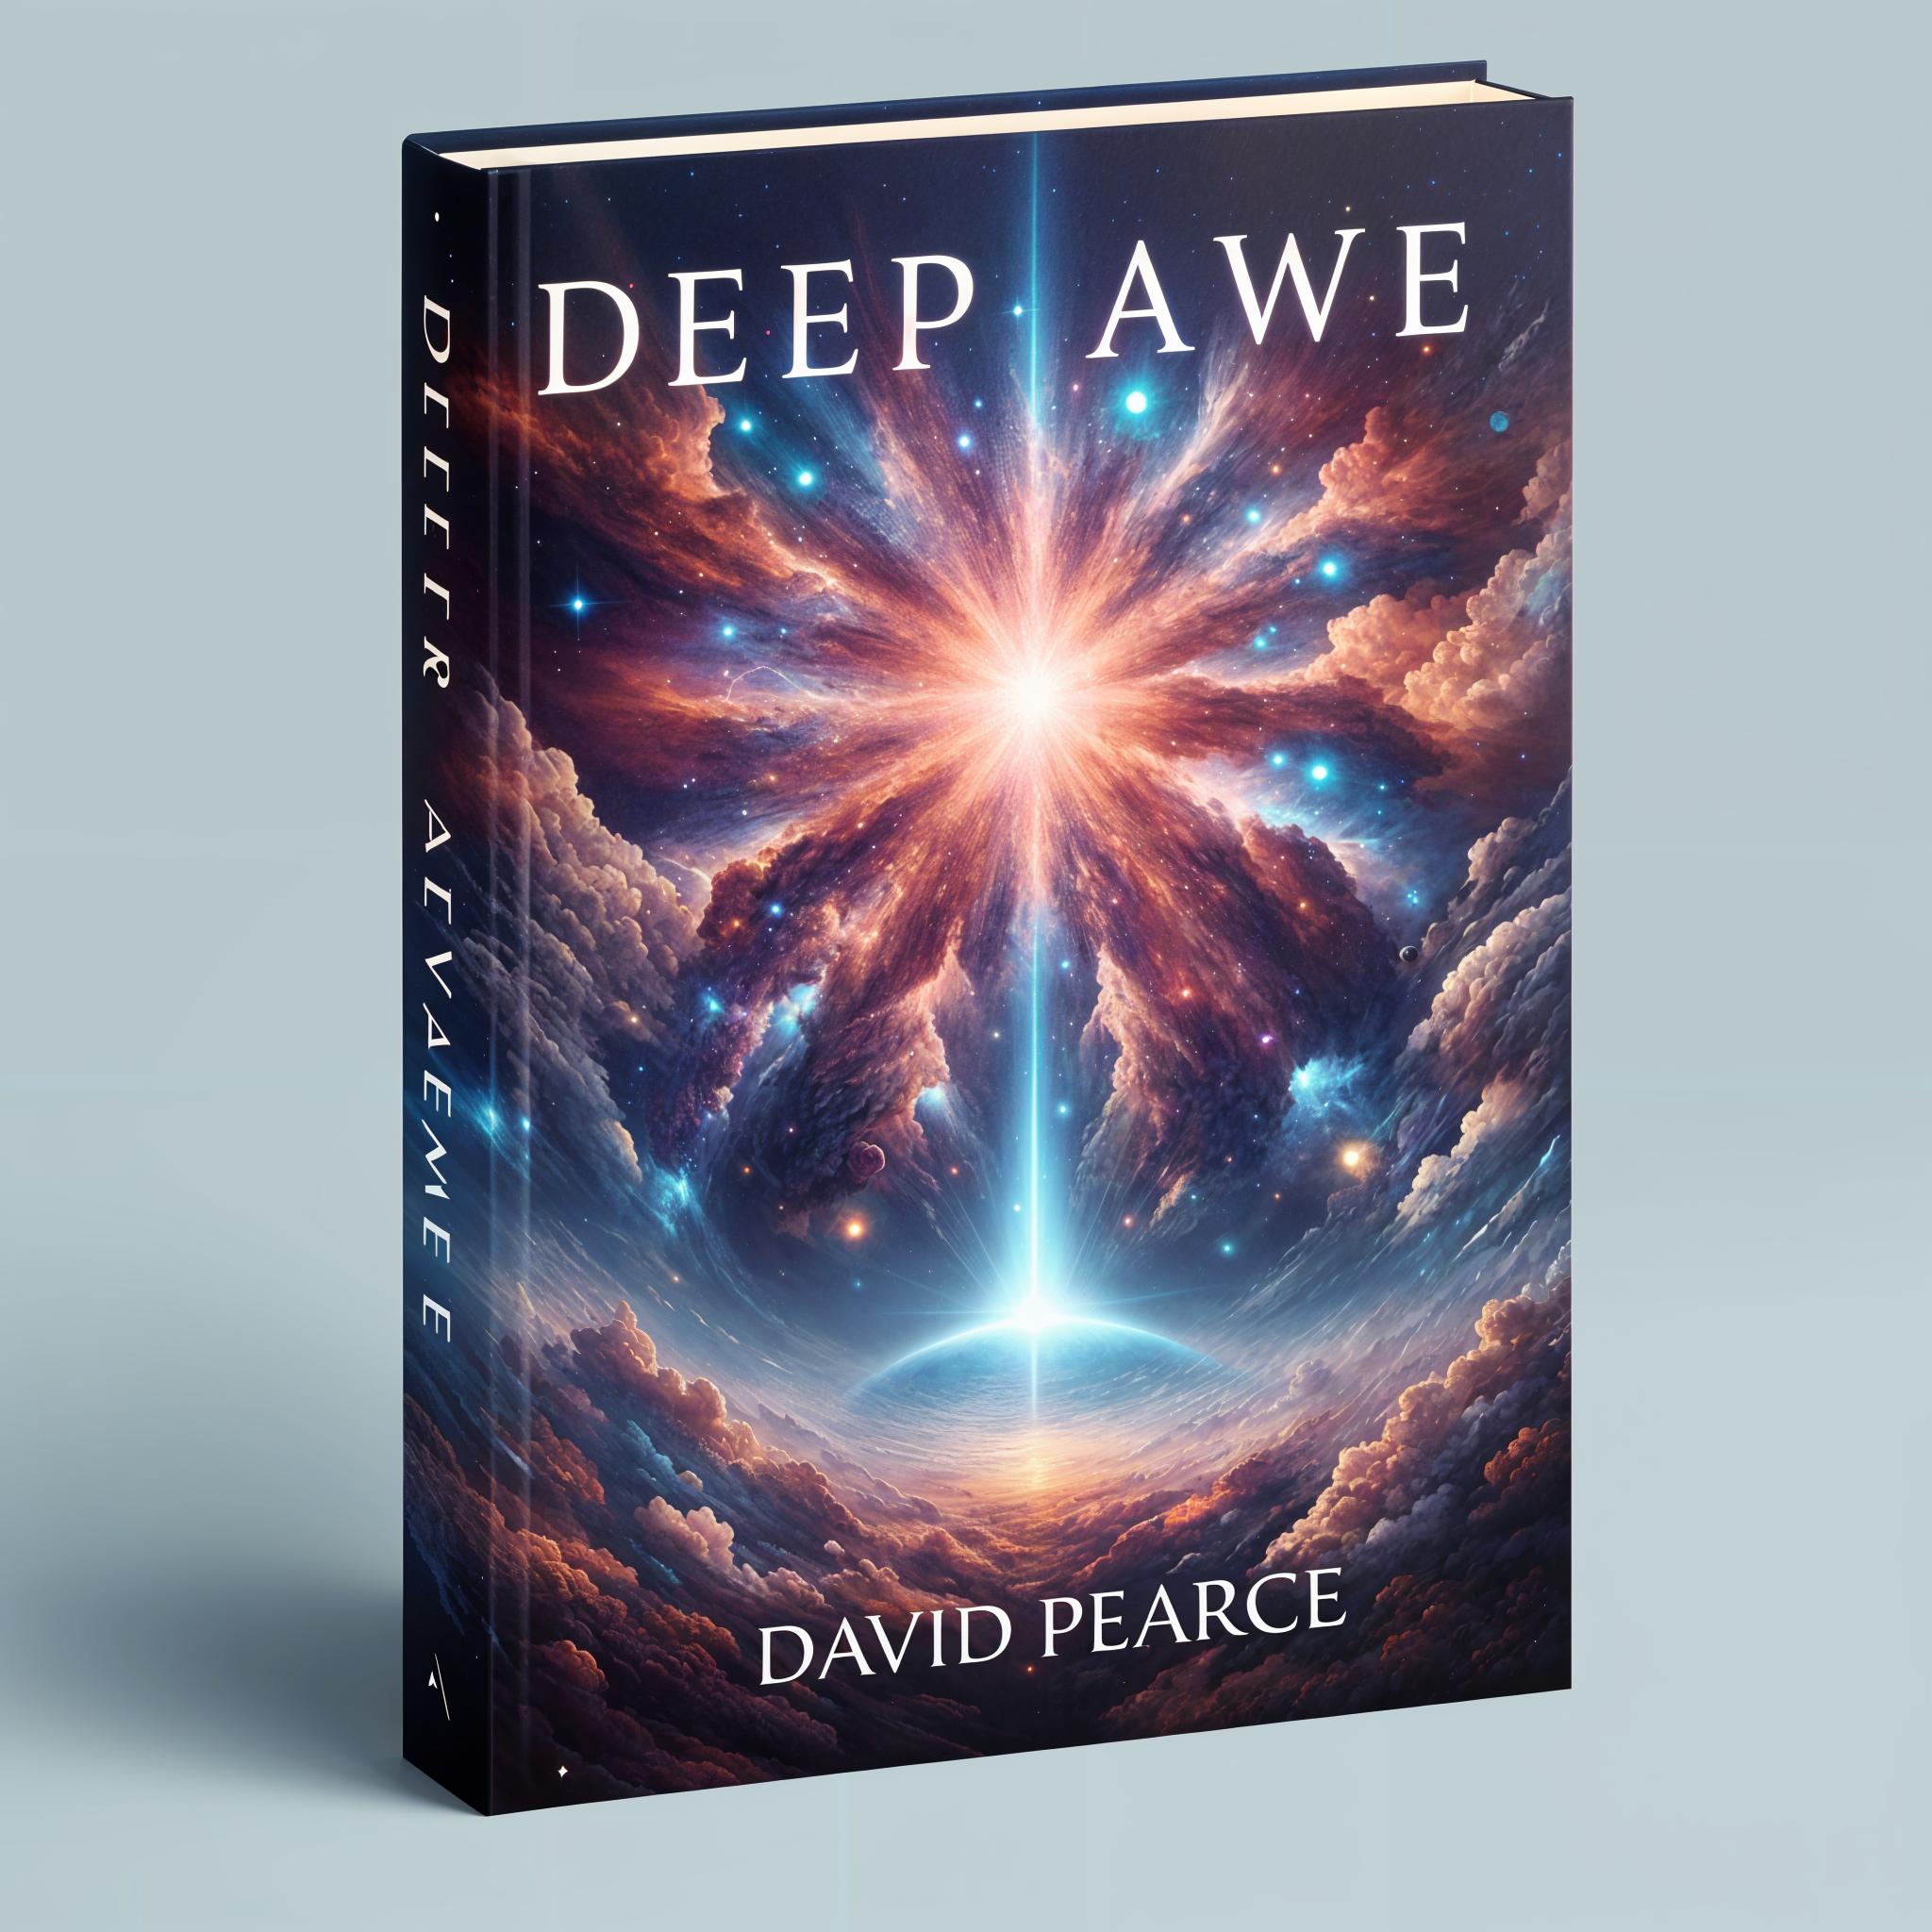 Deep Awe by David Pearce